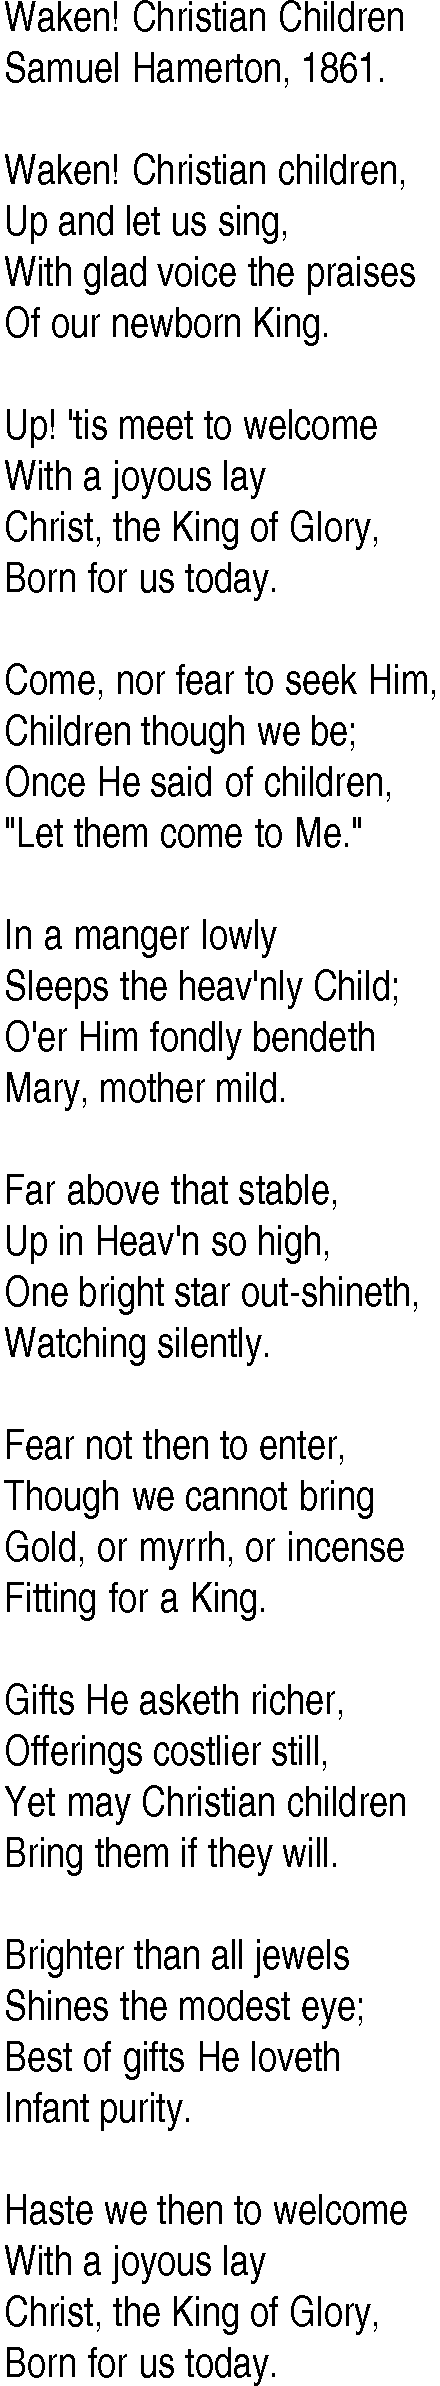 Hymn and Gospel Song: Waken! Christian Children by Samuel Hamerton lyrics